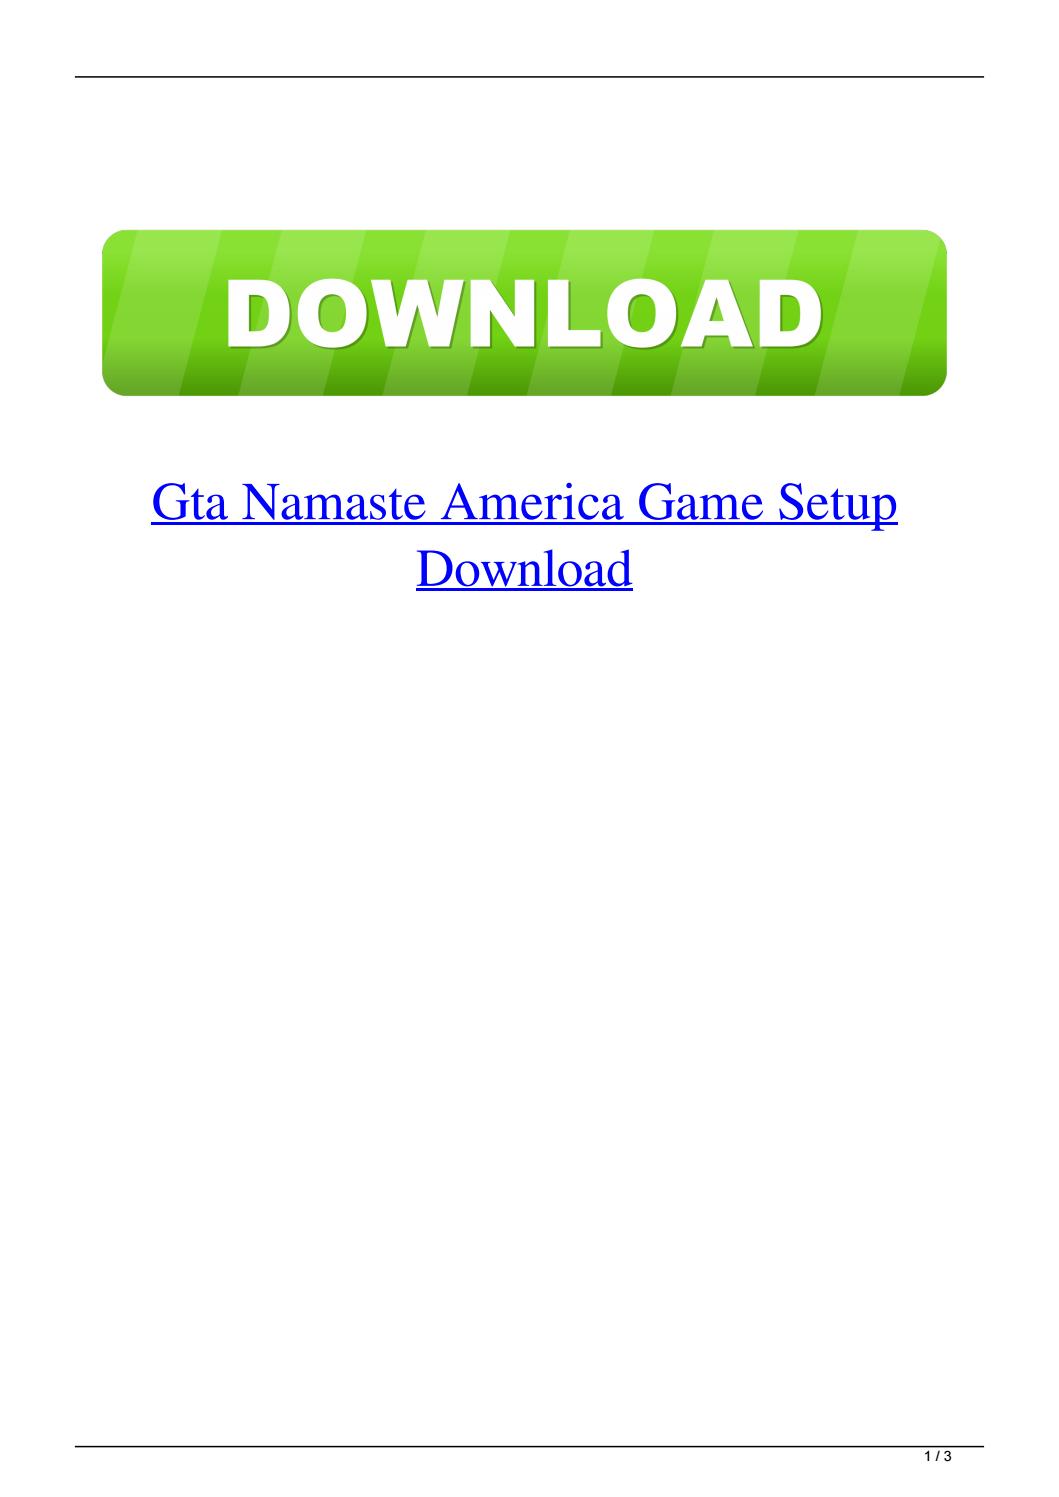 namaste america game download